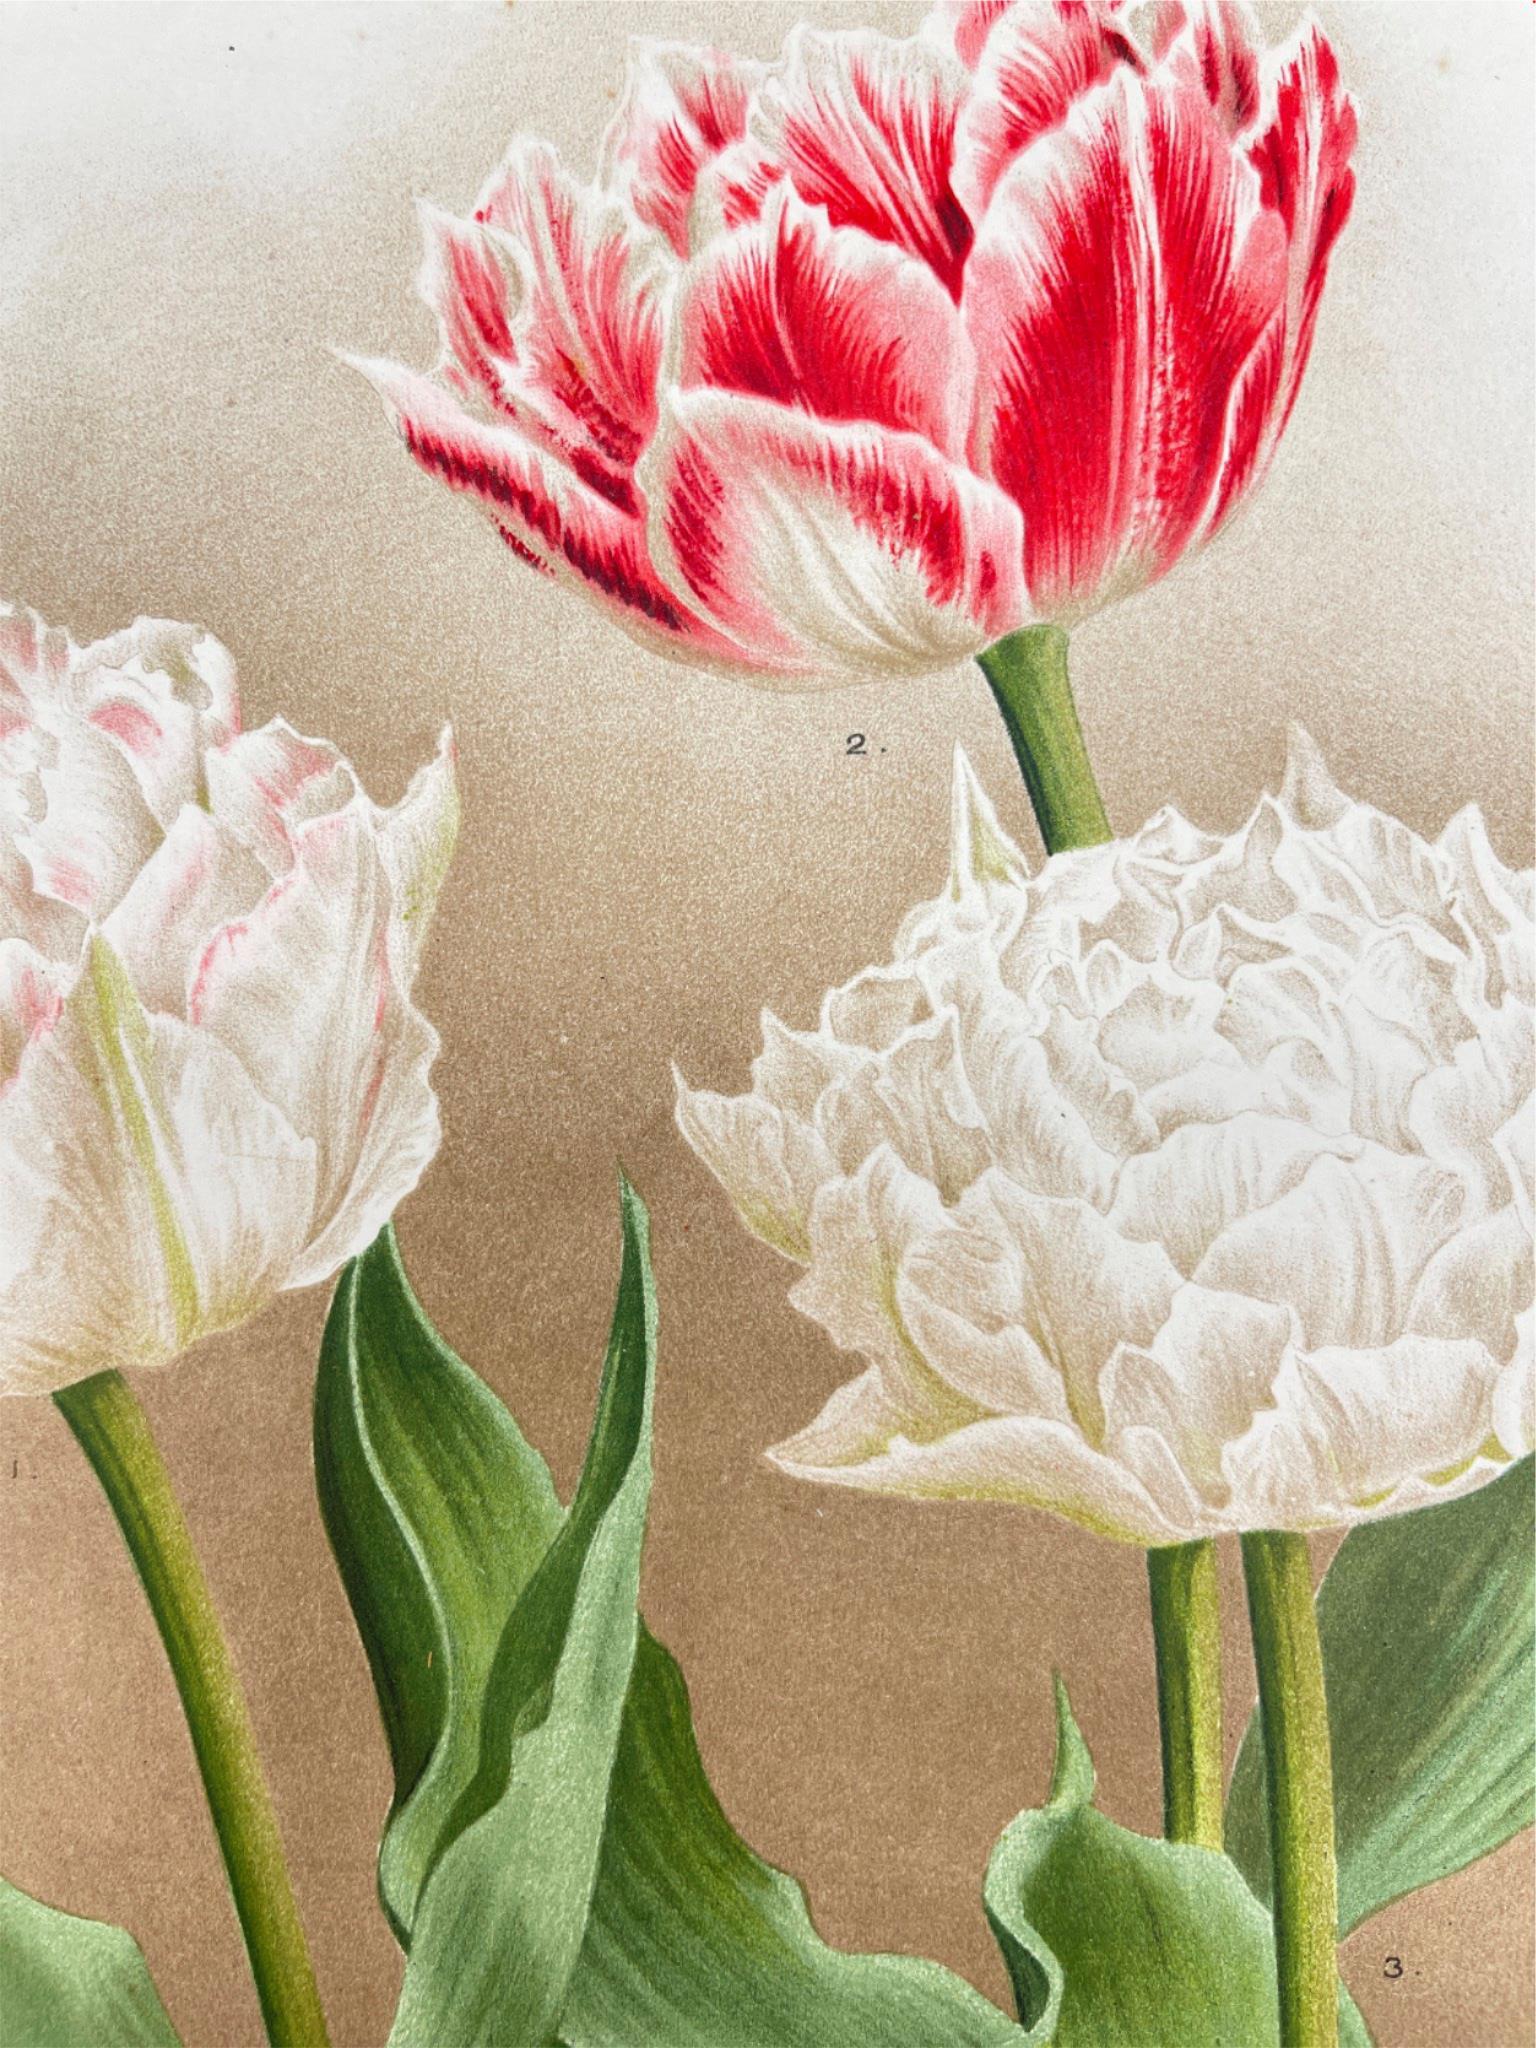 Antique Botanical Print - Flower Art - Murillo - Peony - Goffart & Severeijn - Dahlströms Fine Art